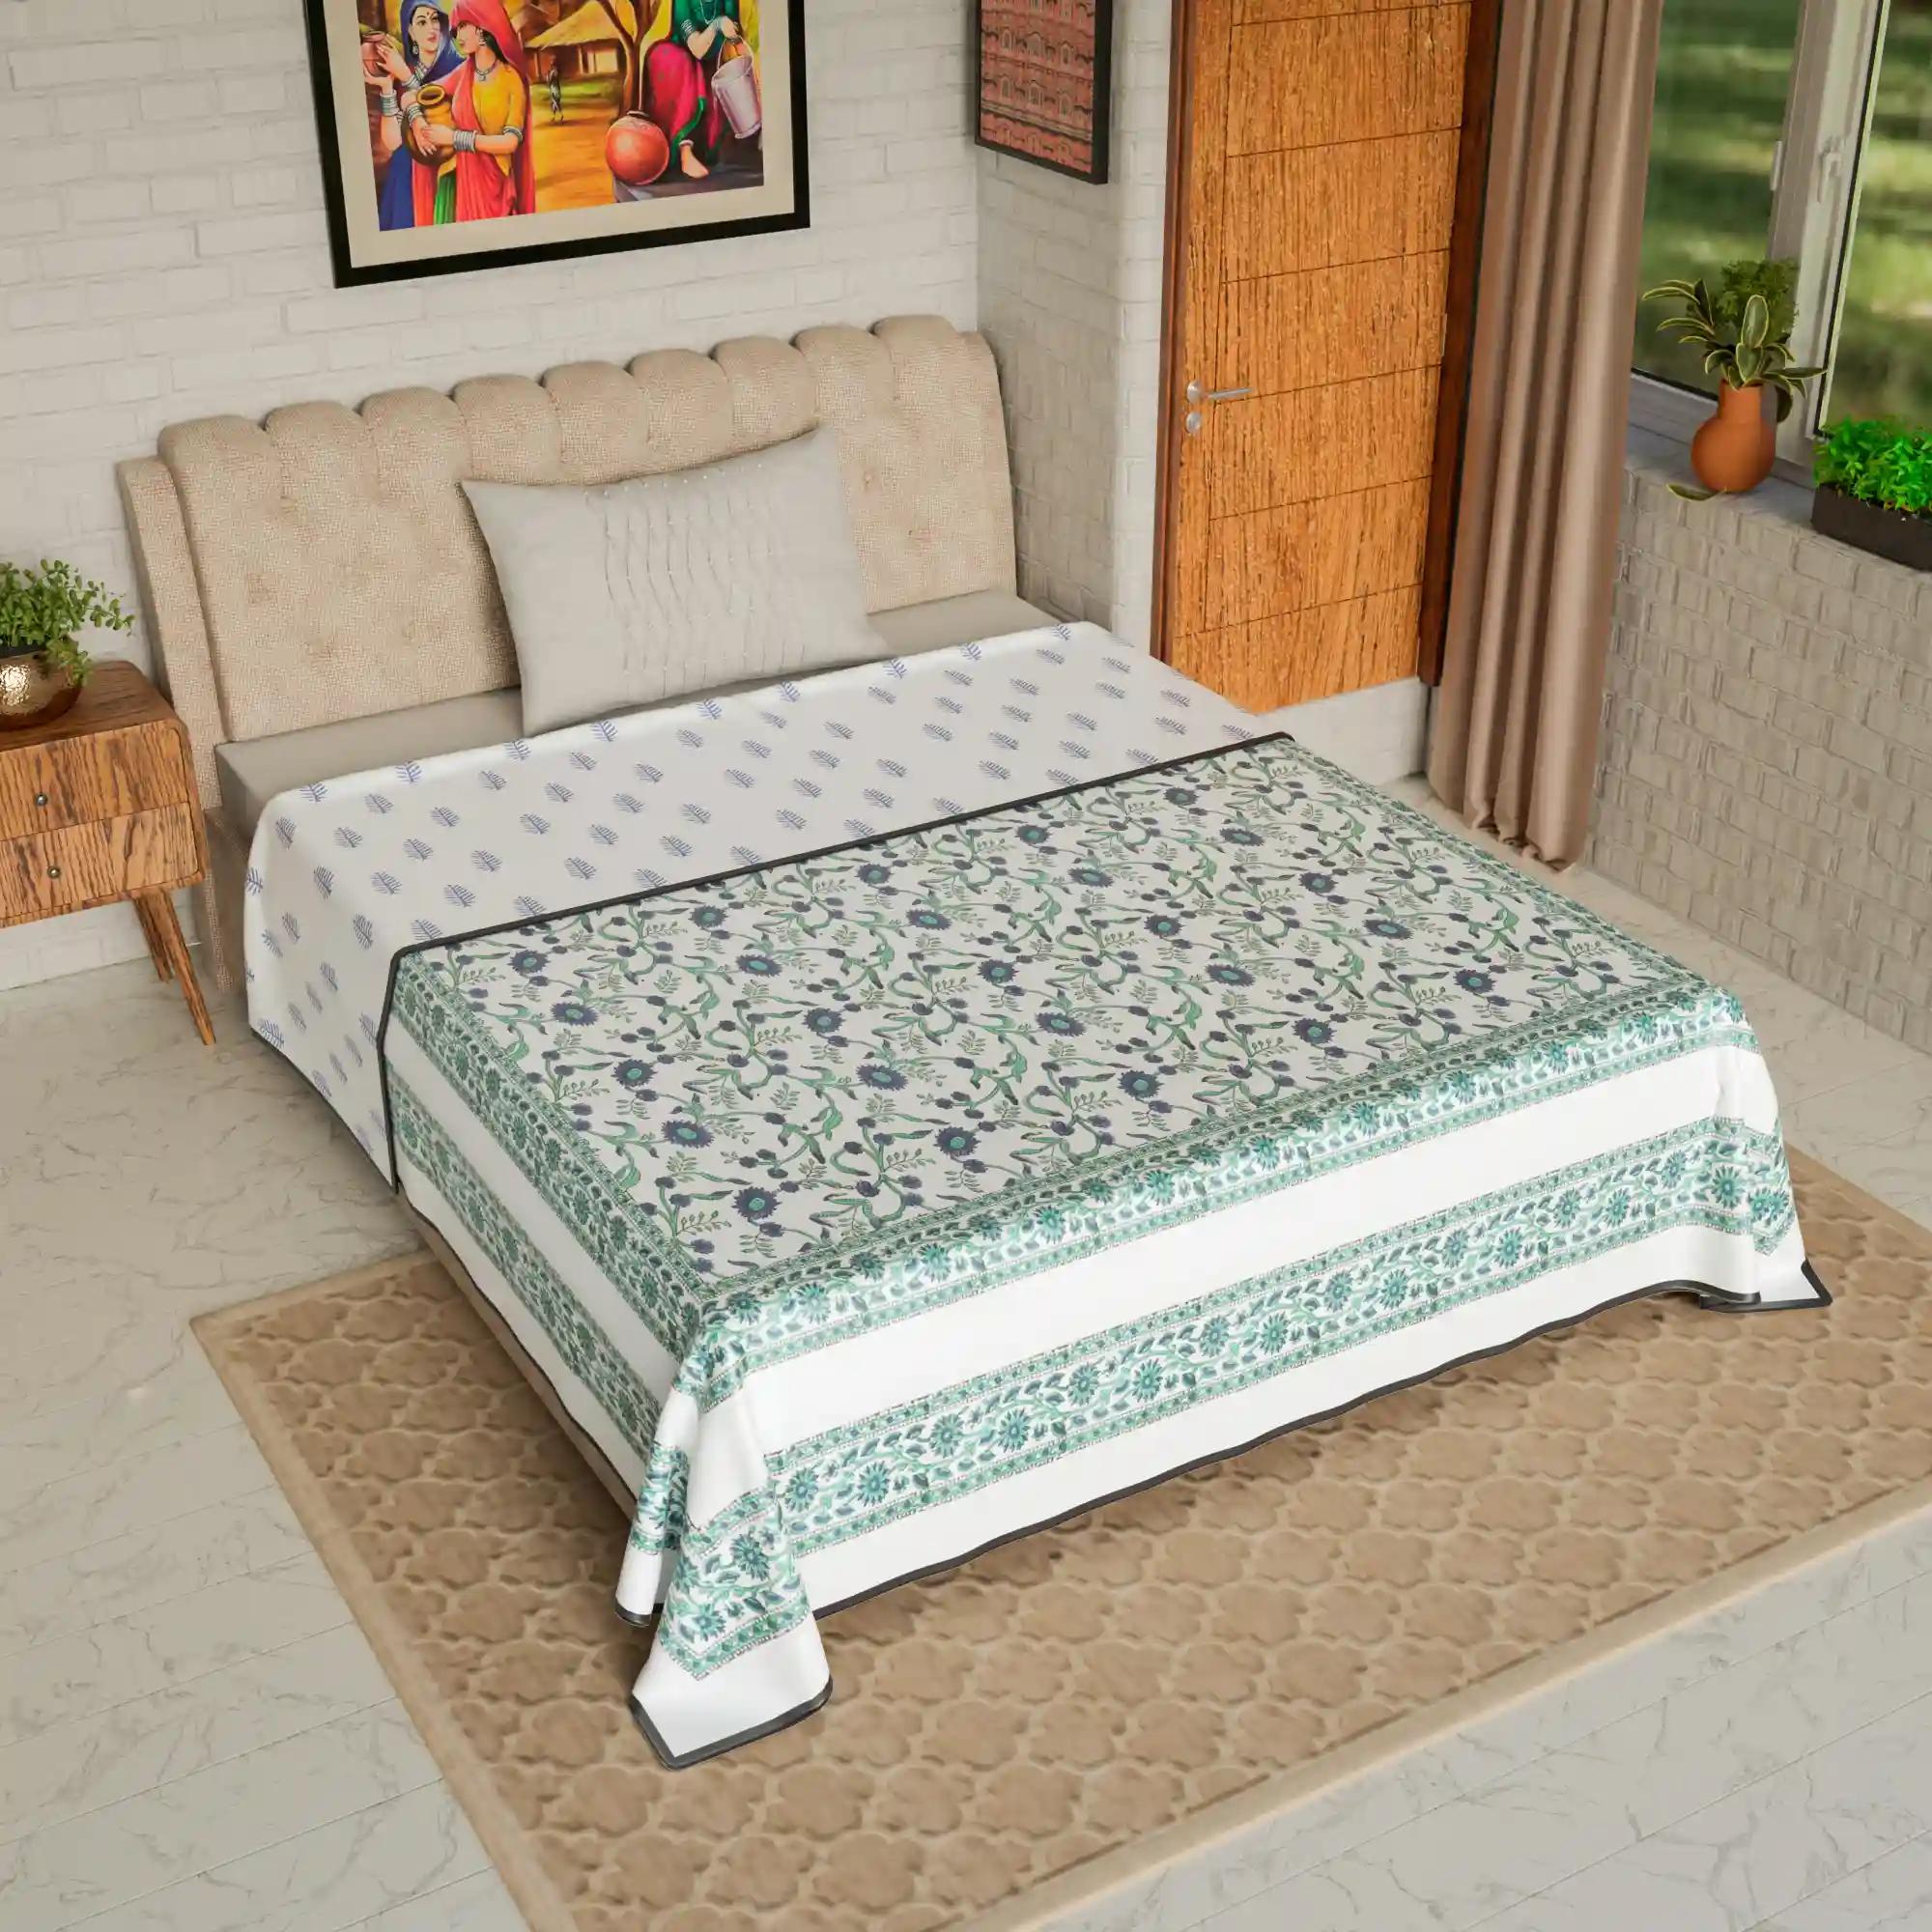 Jaipur Dohar Hand Block Printed Single Bed Cotton Dohar - Blue Green Floral